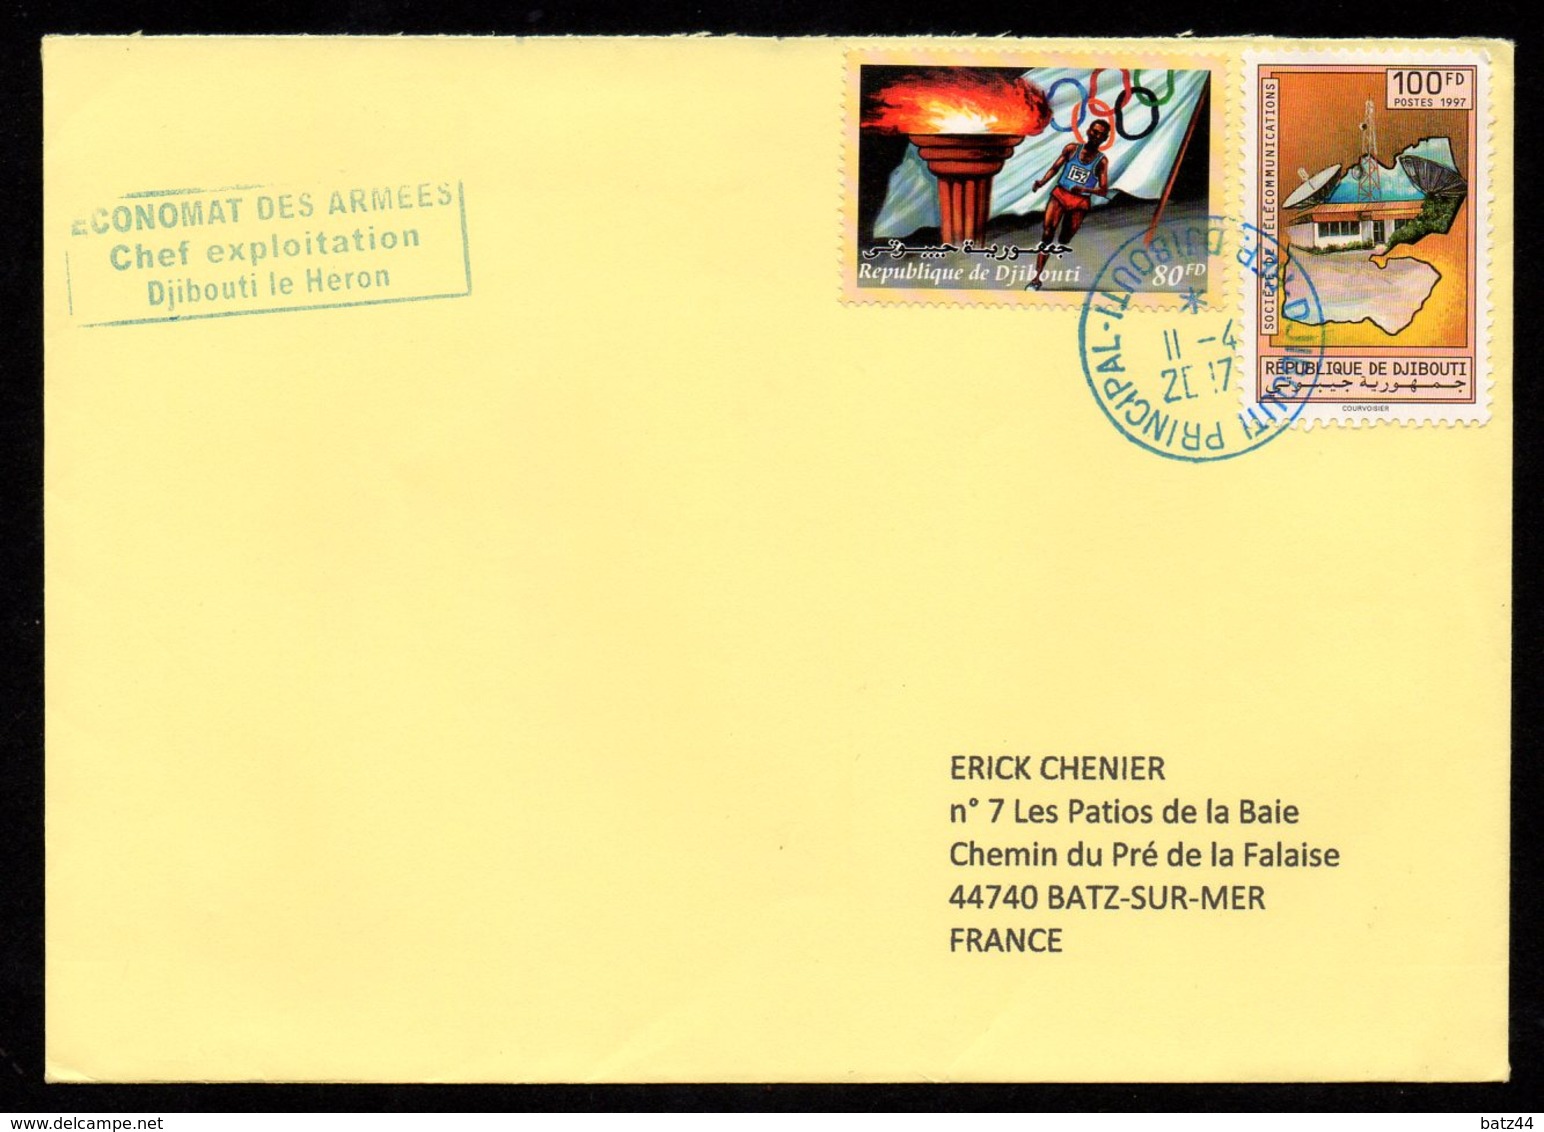 Enveloppe Du 11 04 2017 Djibouti Pour La France - Djibouti (1977-...)